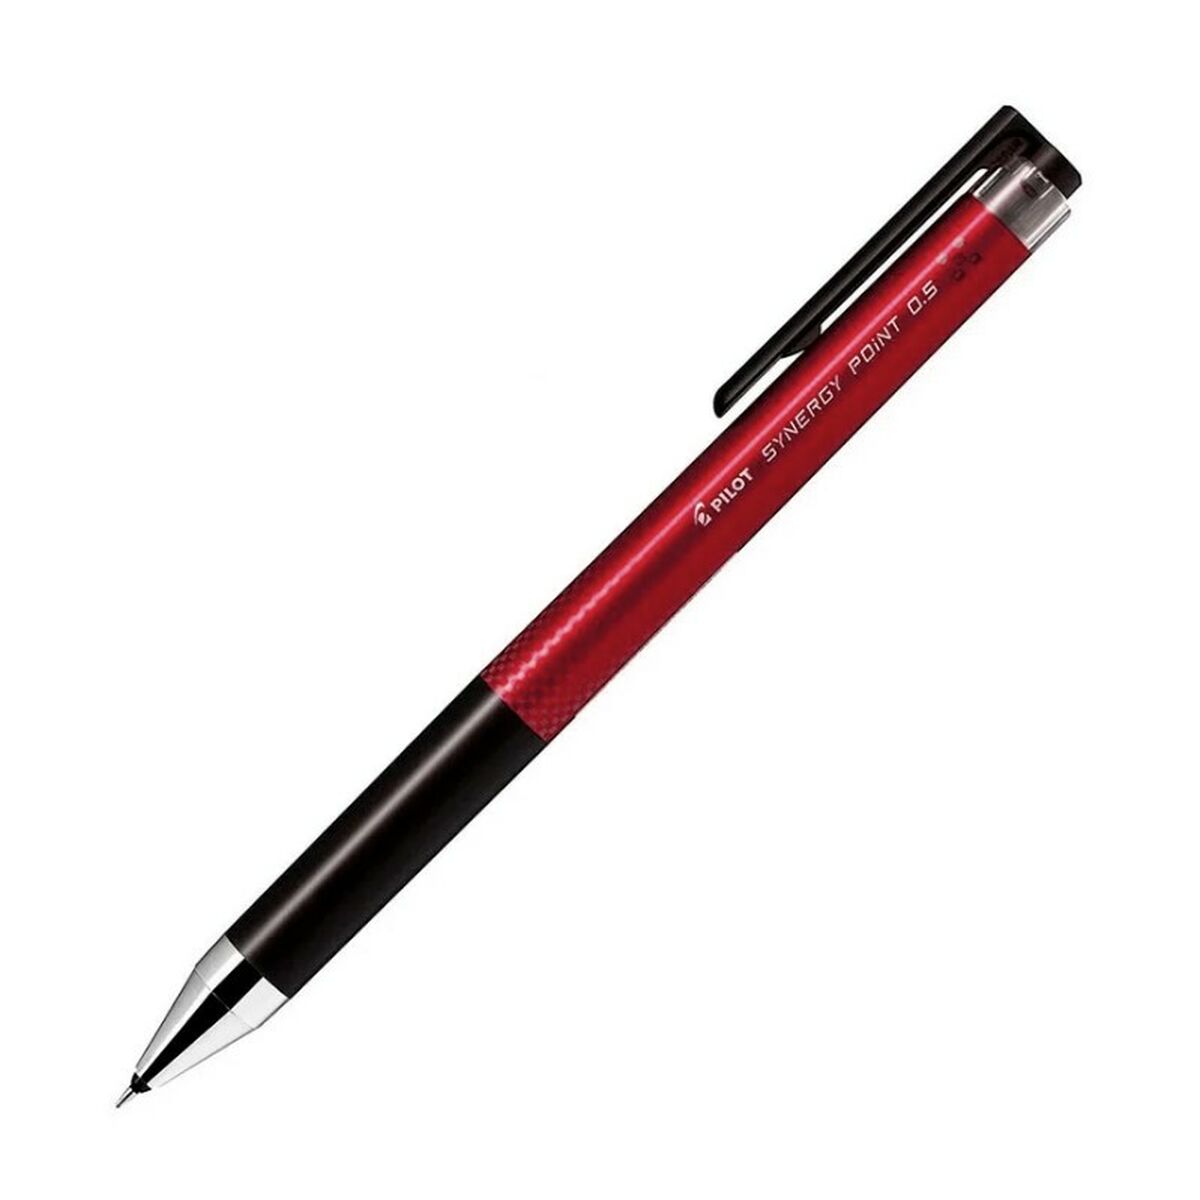 Gelpenna Pilot Synergy Point Röd 0,5 mm (12 antal)-Kontor och Kontorsmaterial, Kulspetspennor, pennor och skrivverktyg-Pilot-peaceofhome.se